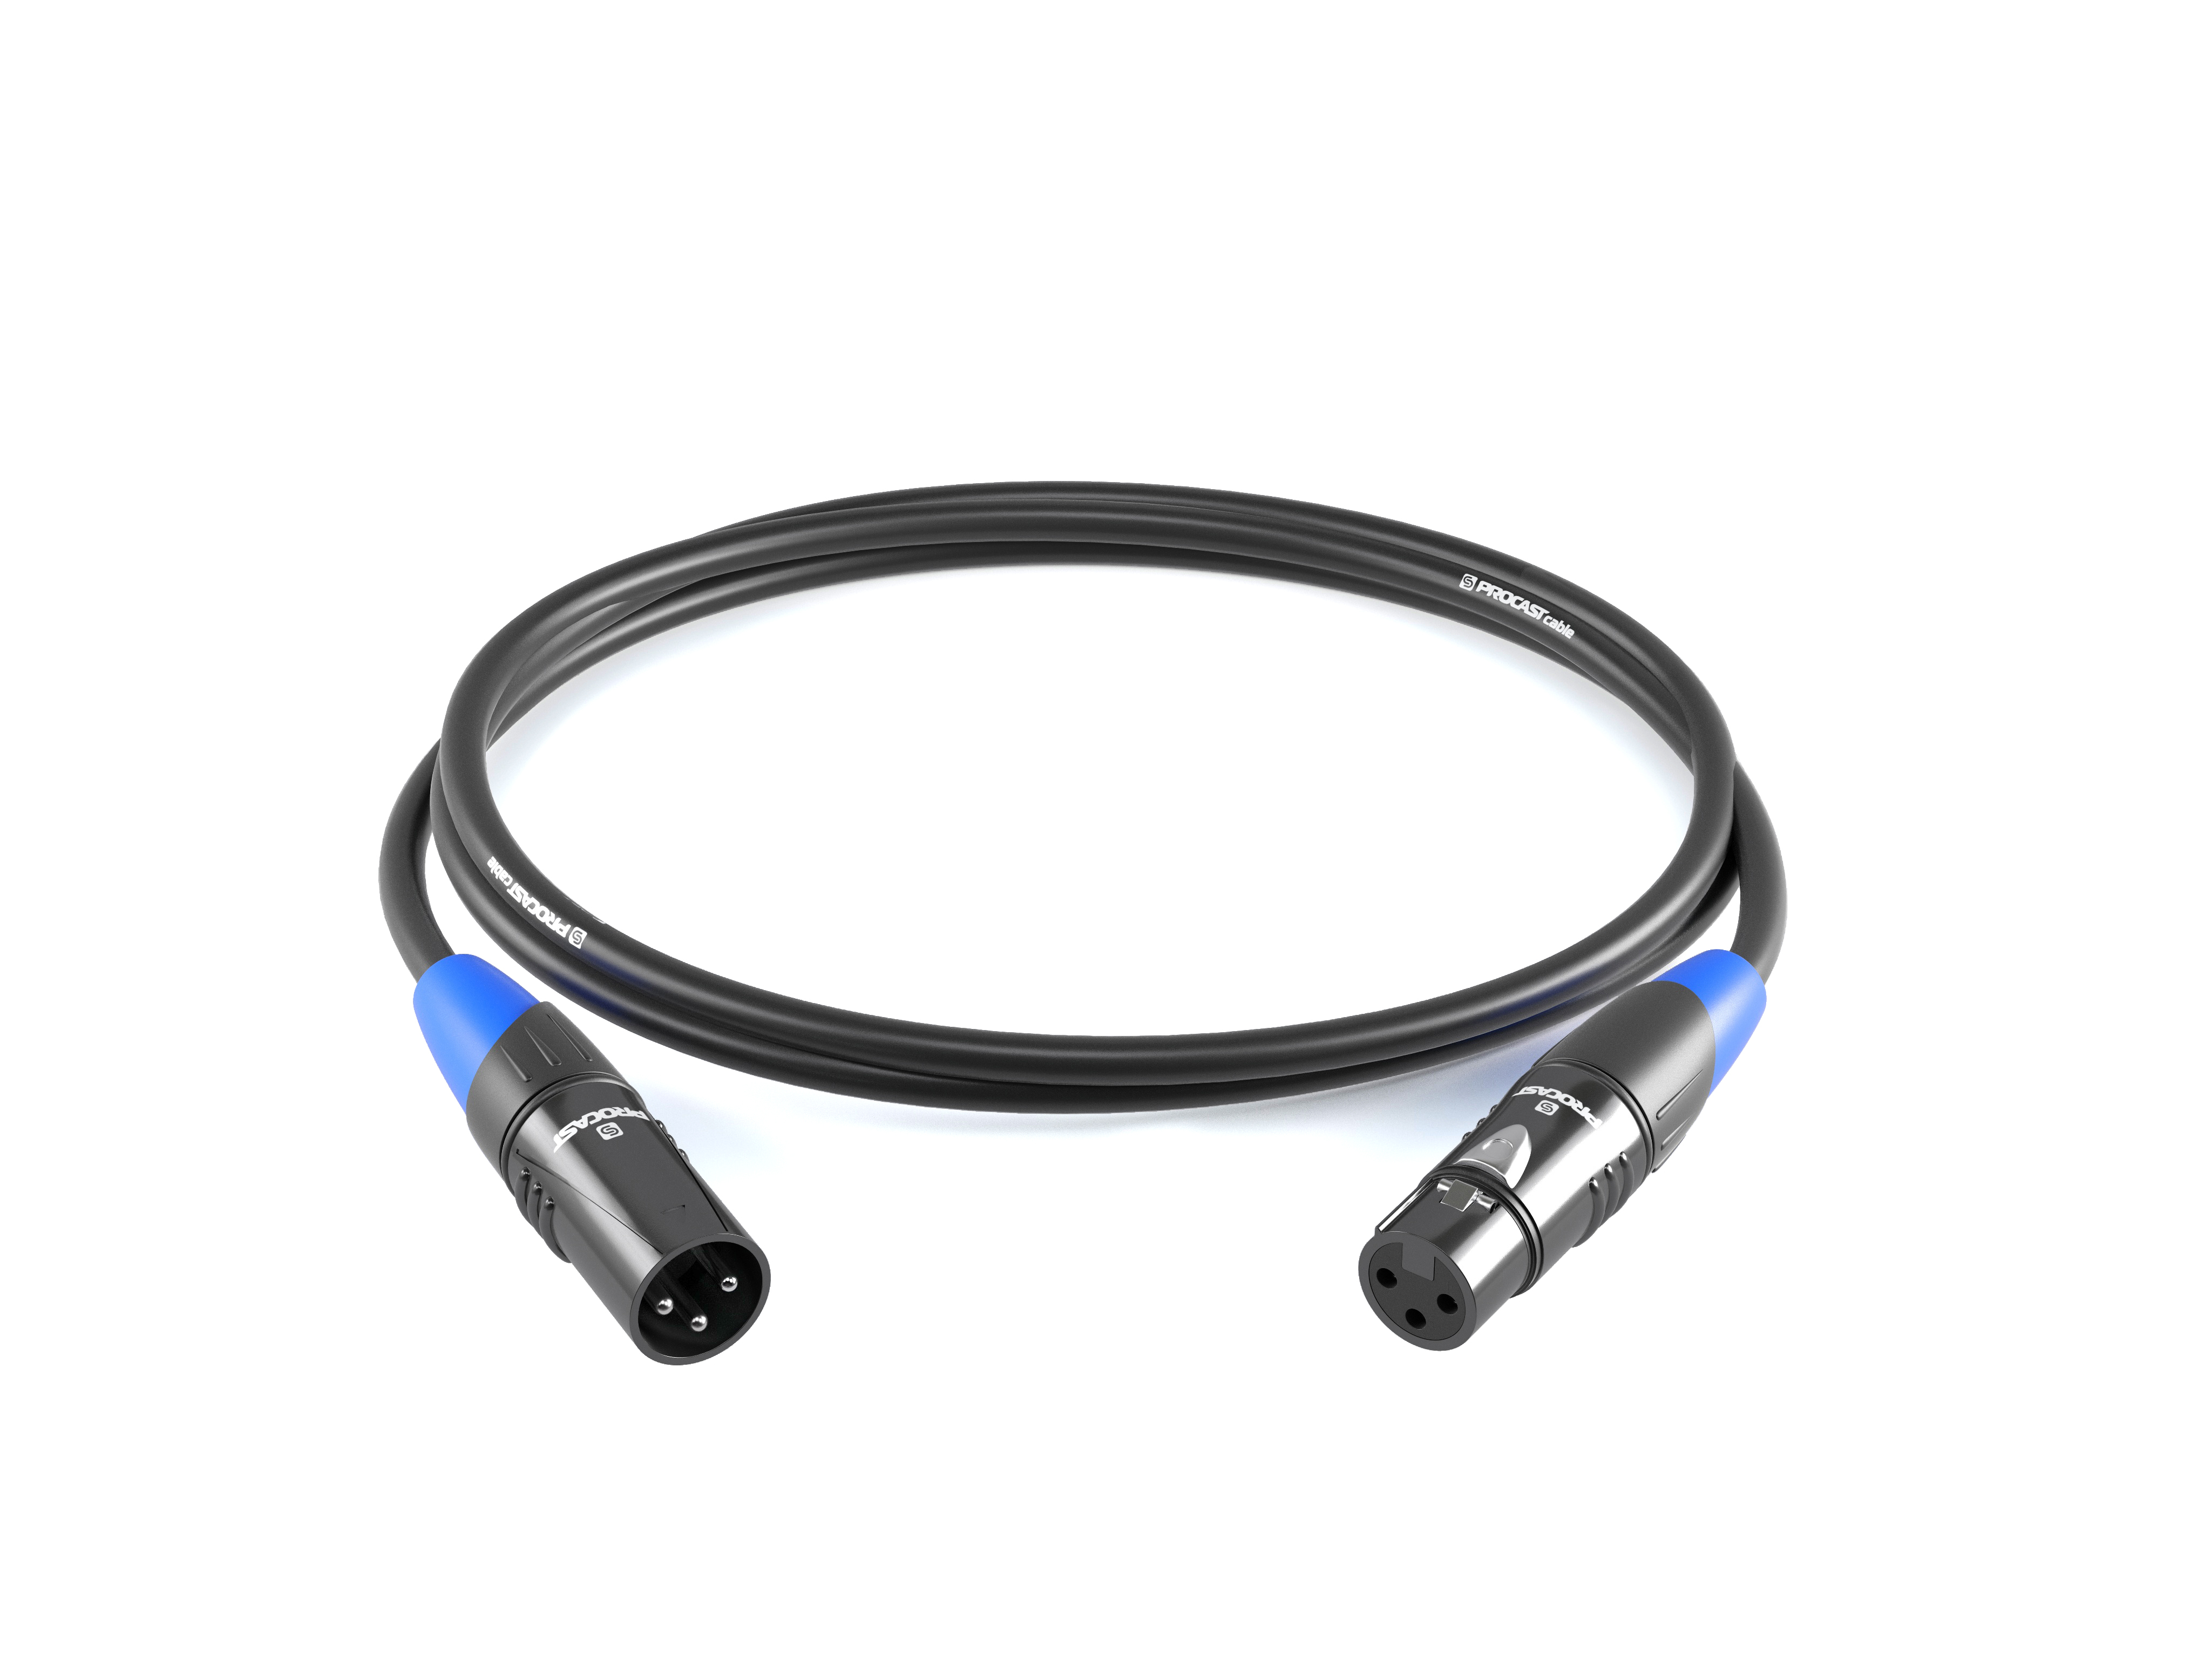 фото Межблочный балансный кабель procast cable xlr(m)/xlr(f), длина 1m, цвет черный